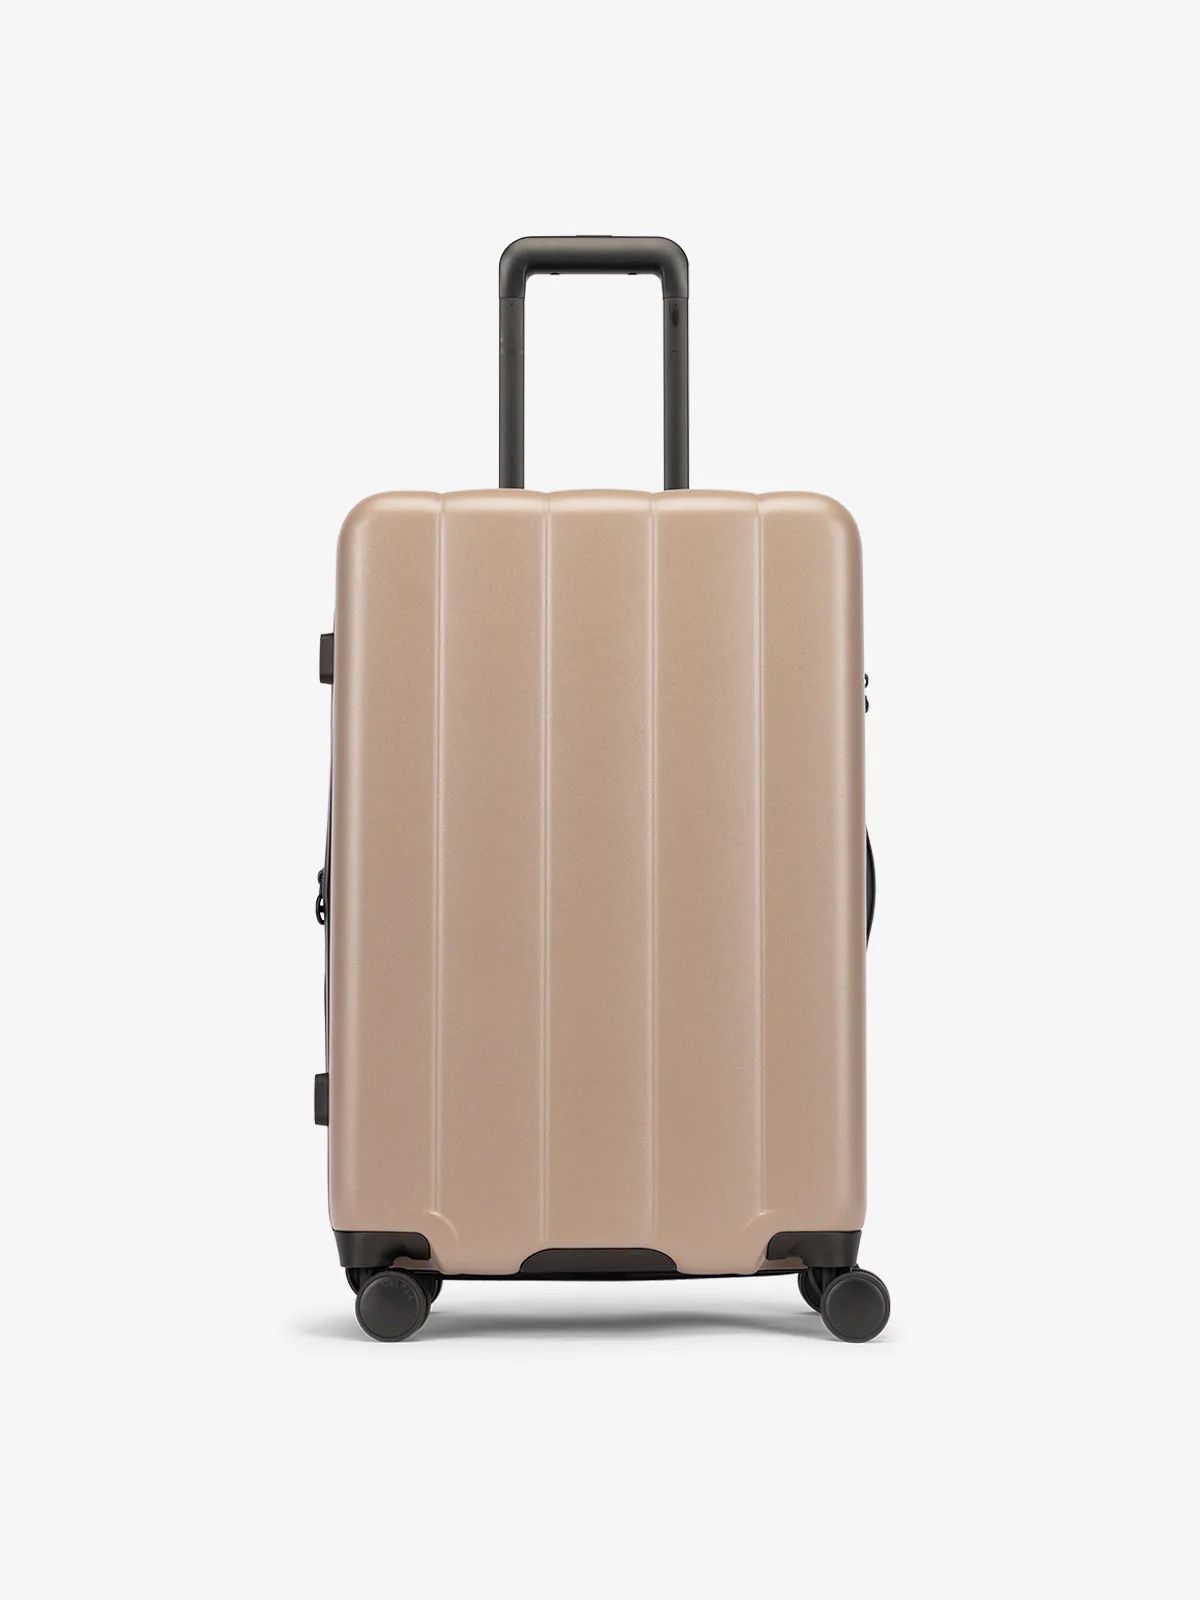 Evry Medium Luggage | CALPAK | CALPAK Travel